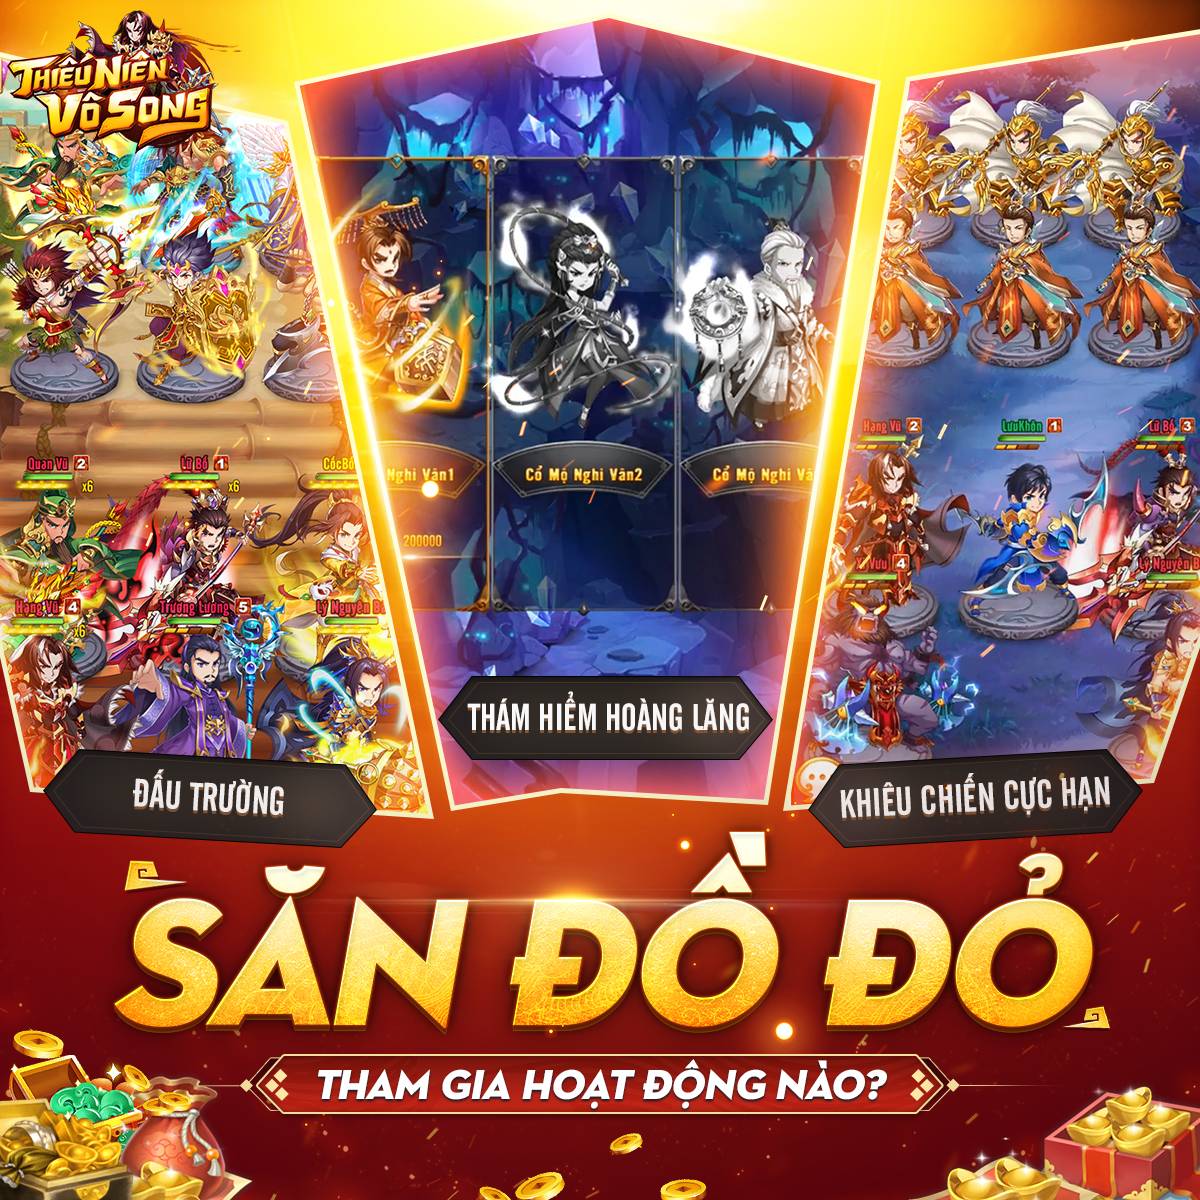 『GAME MỚI』Thiếu Niên Vô Song – Game thẻ tướng cổ điển 6 vs 6 sắp ra mắt làng game Việt tháng 10